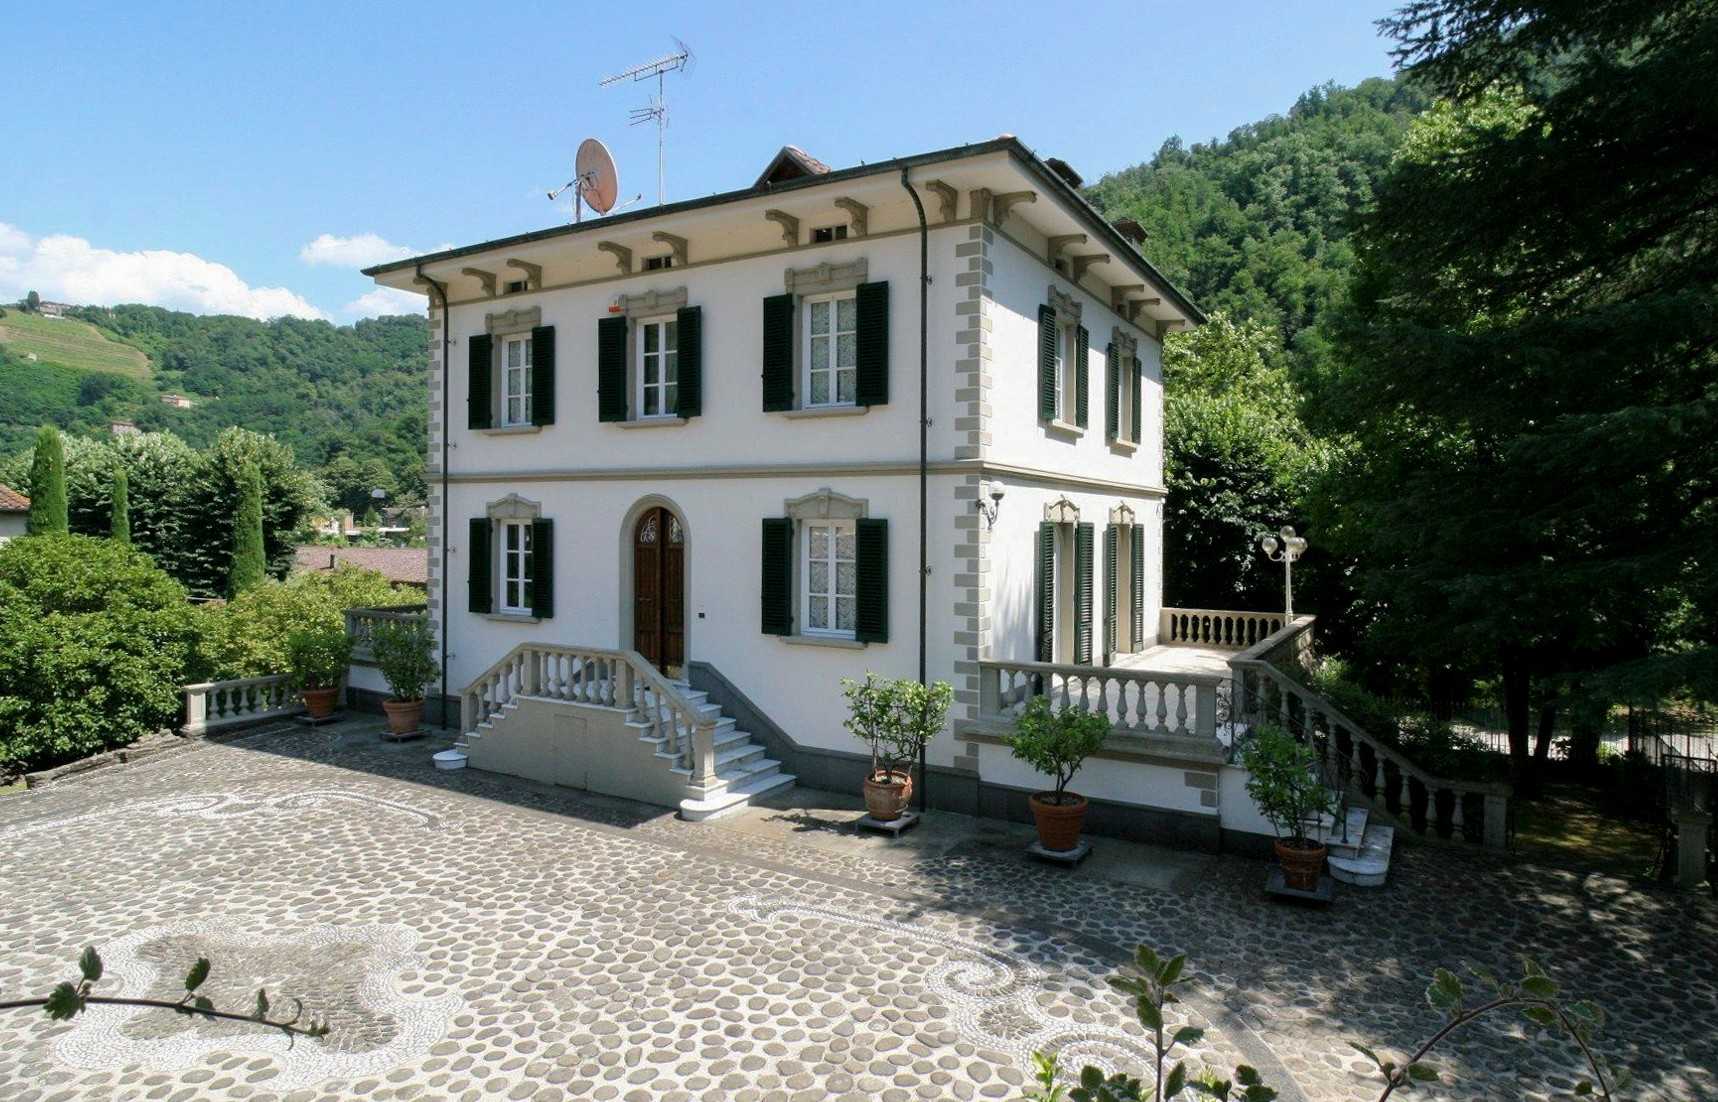 Fotos Luxuriöses Toskana-Anwesen in Bagni di Lucca mit Herrenhaus, Bauernhaus und Park